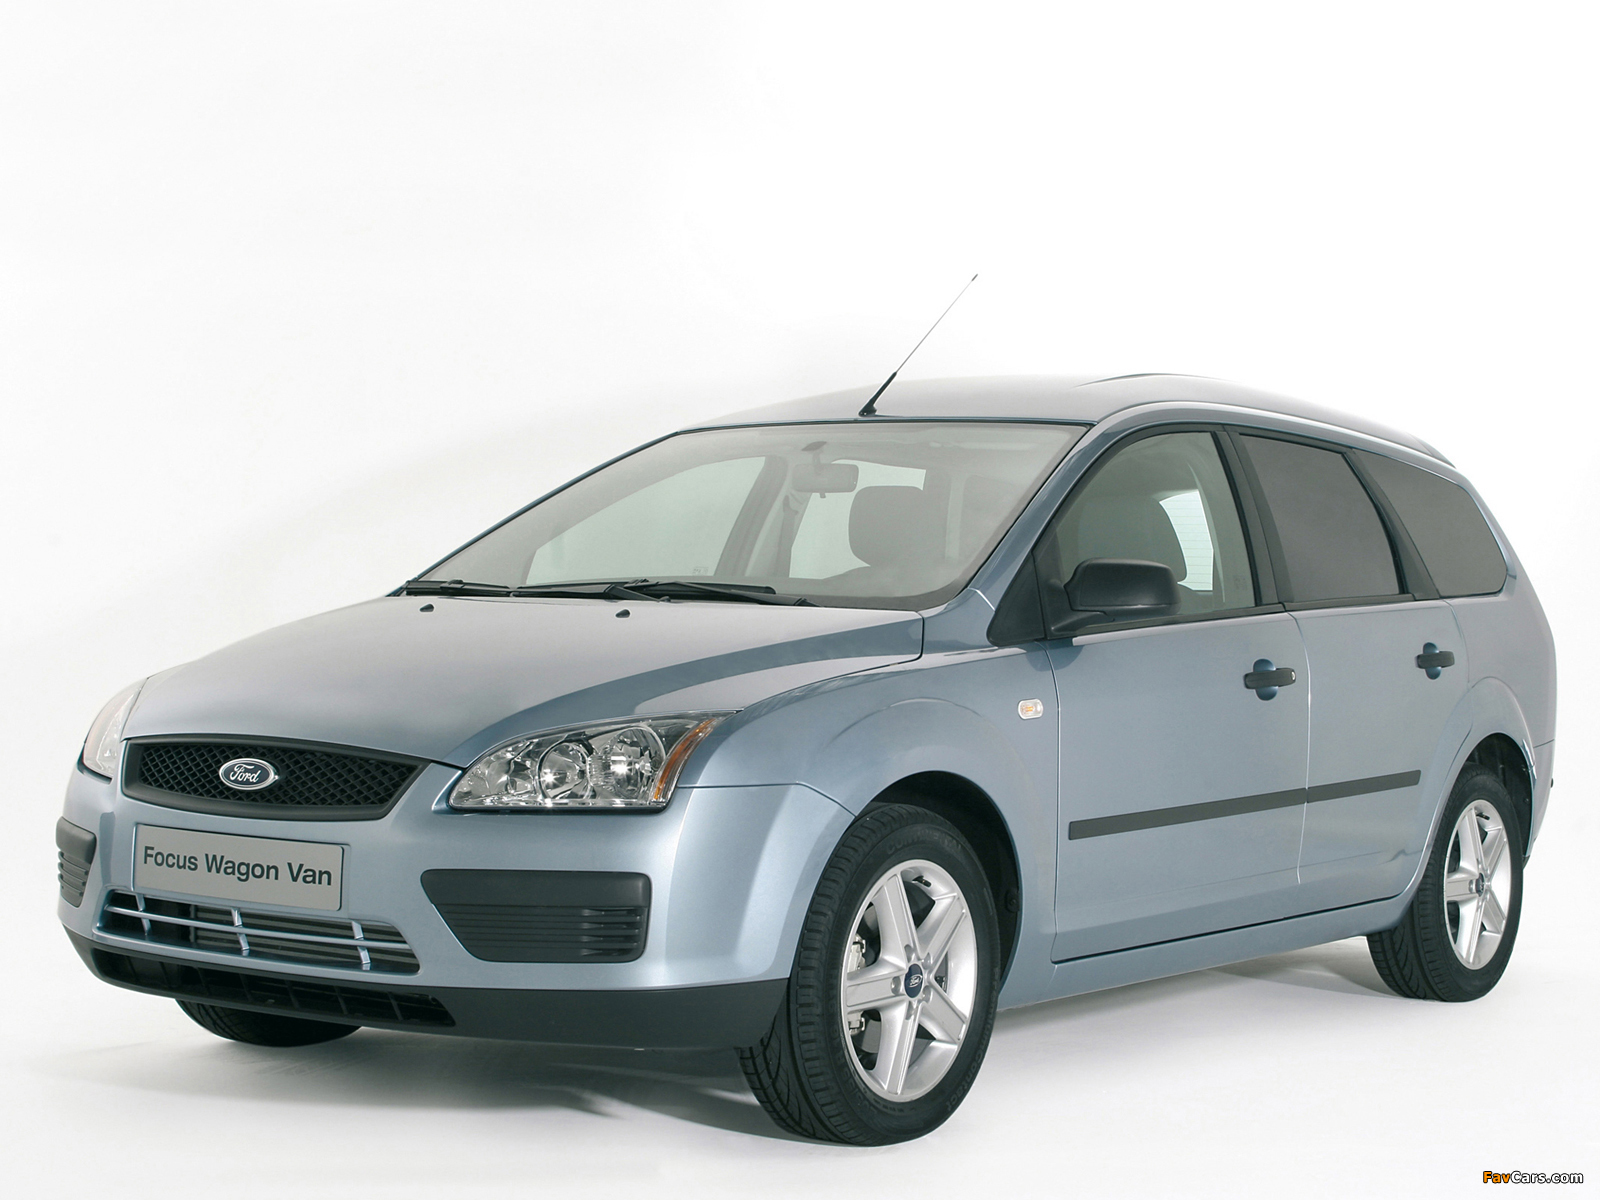 Форд фокус 2.0 универсал. Ford Focus II 2005-2011 универсал. Ford Focus универсал 2005. Ford Focus 2 универсал. Форд фокус 2 2005г универсал.